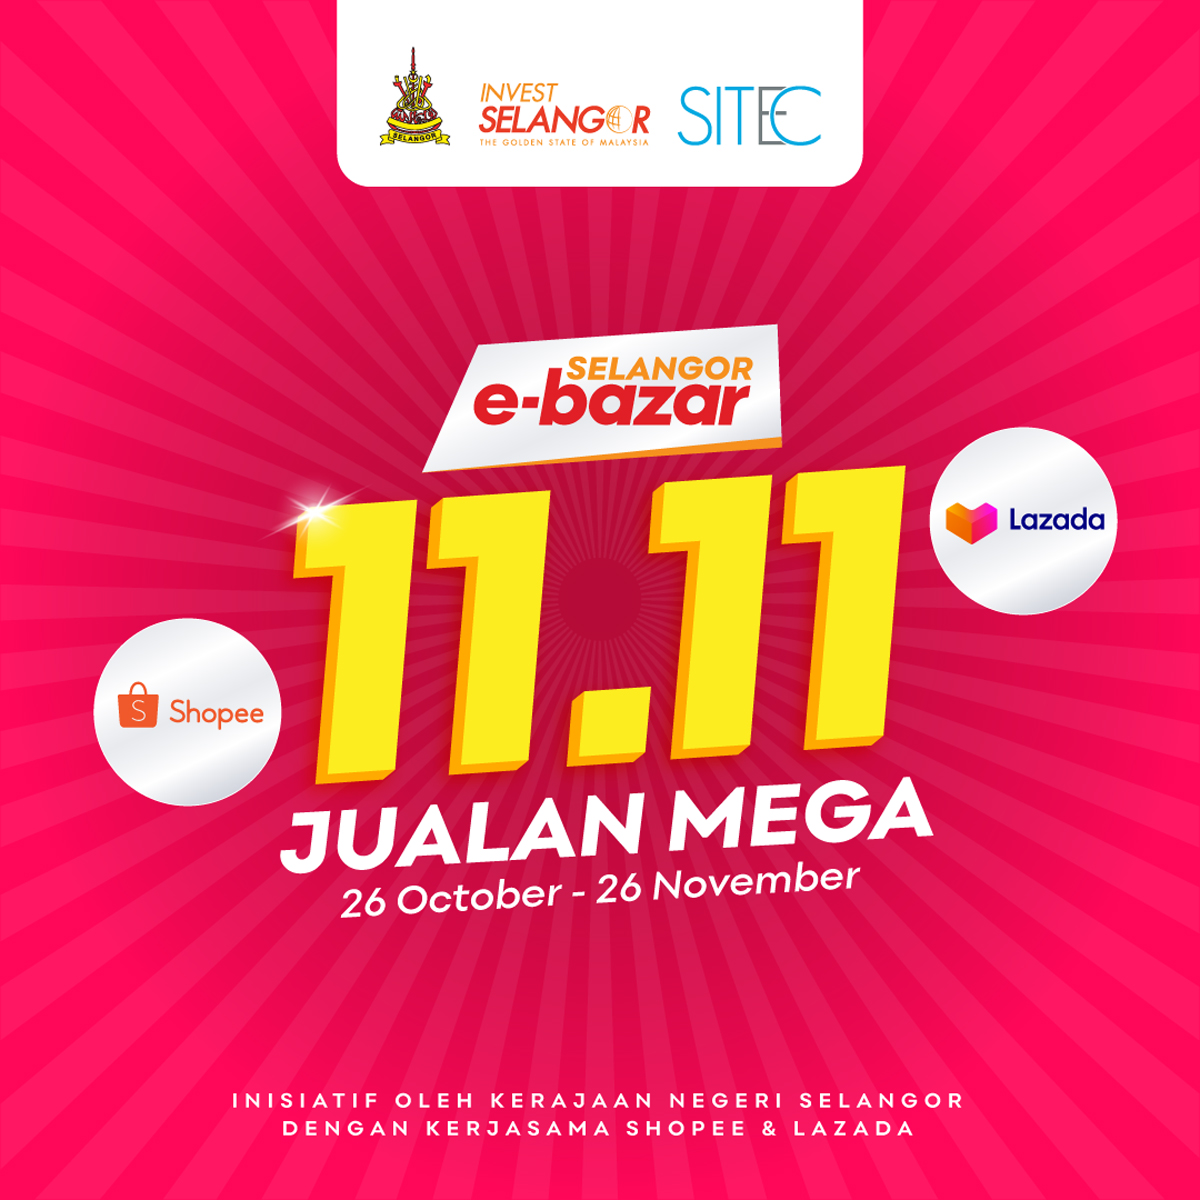 Selangor Govt E-Bazar Mega campaña de ventas